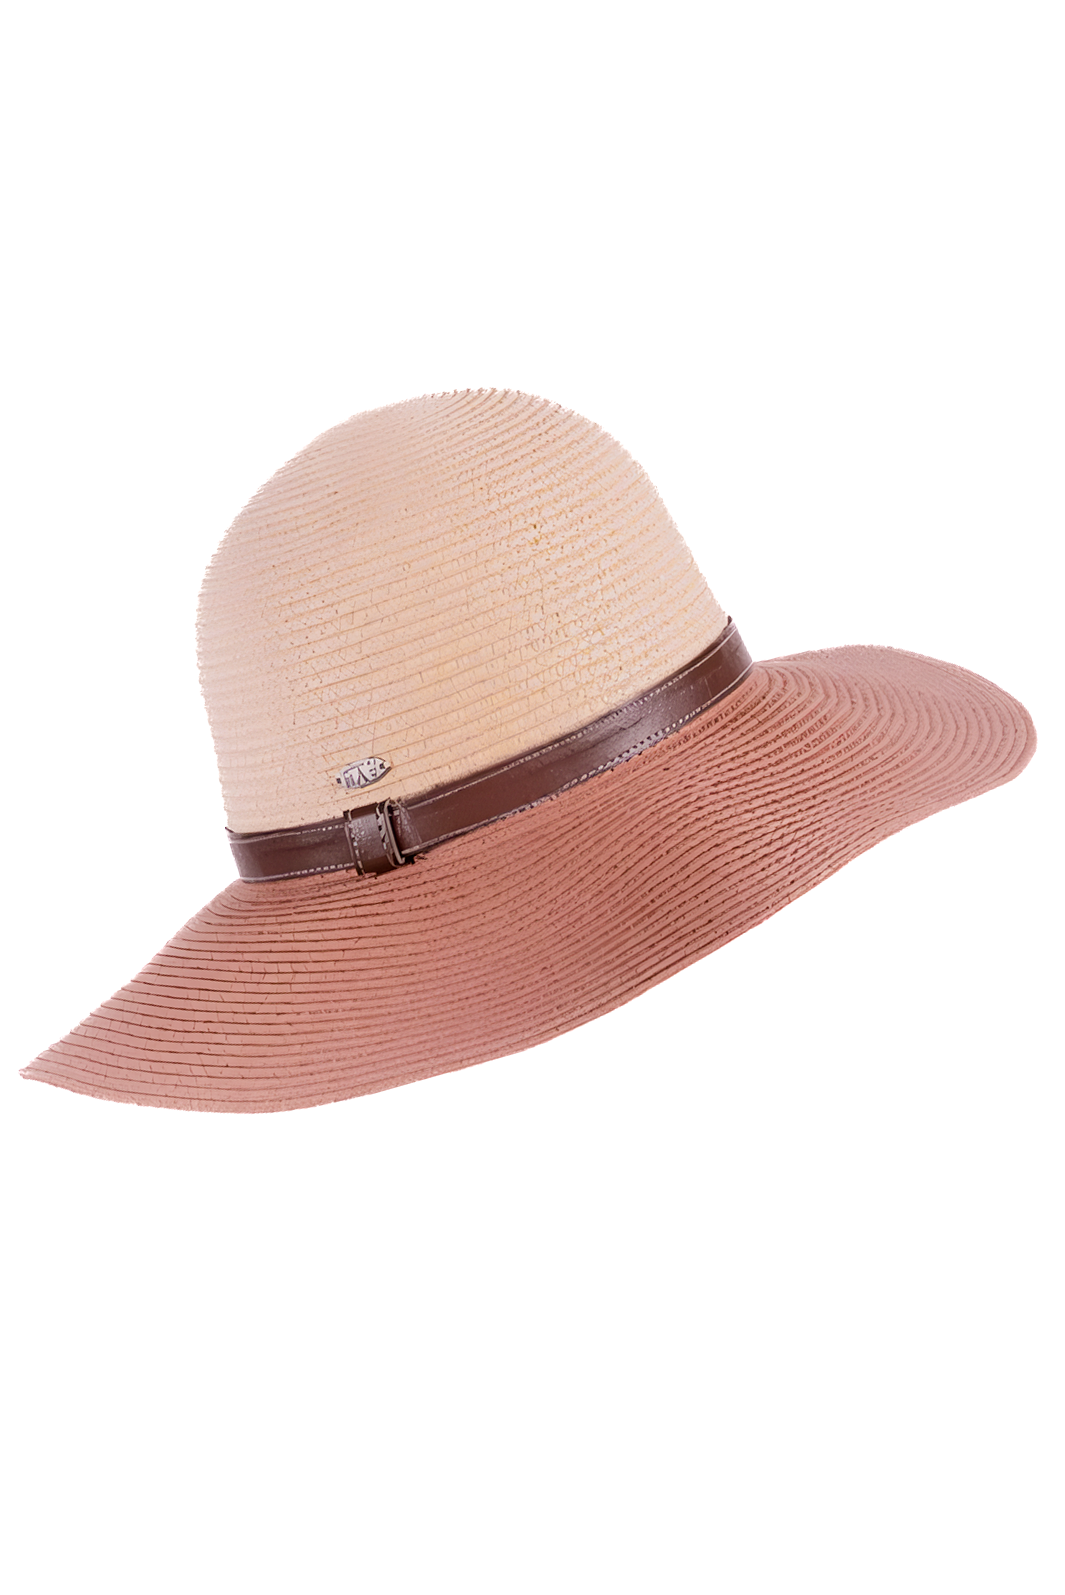 Chapeau  Copacap-Floppy de Canadian Hat